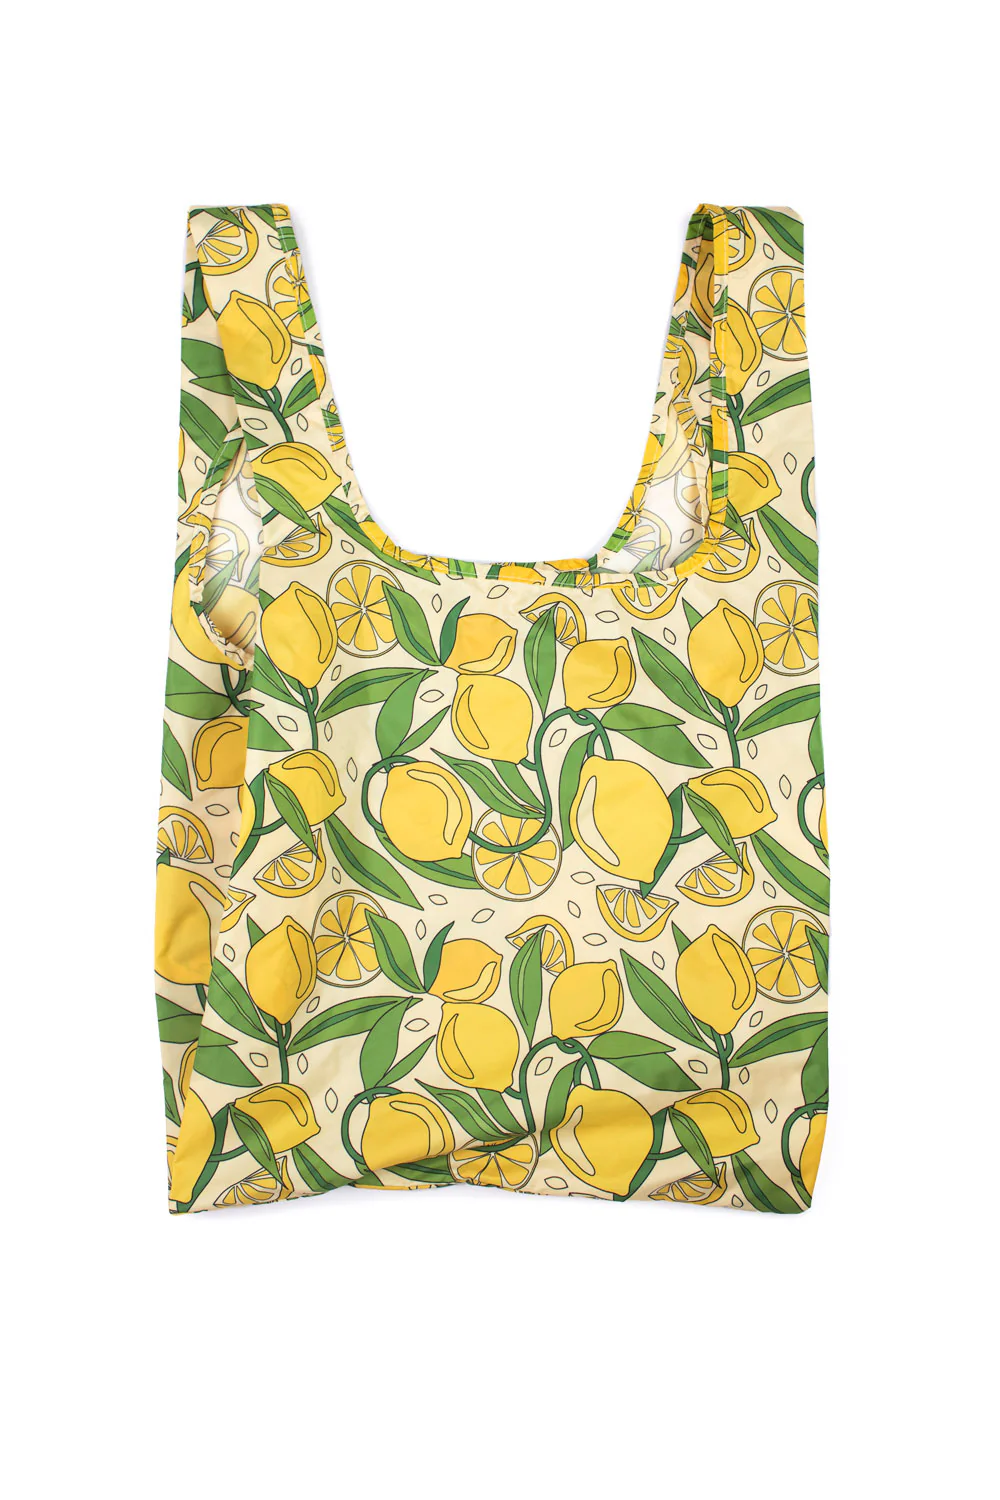 Kind Bag Reusable Shopping Bag - Lemons